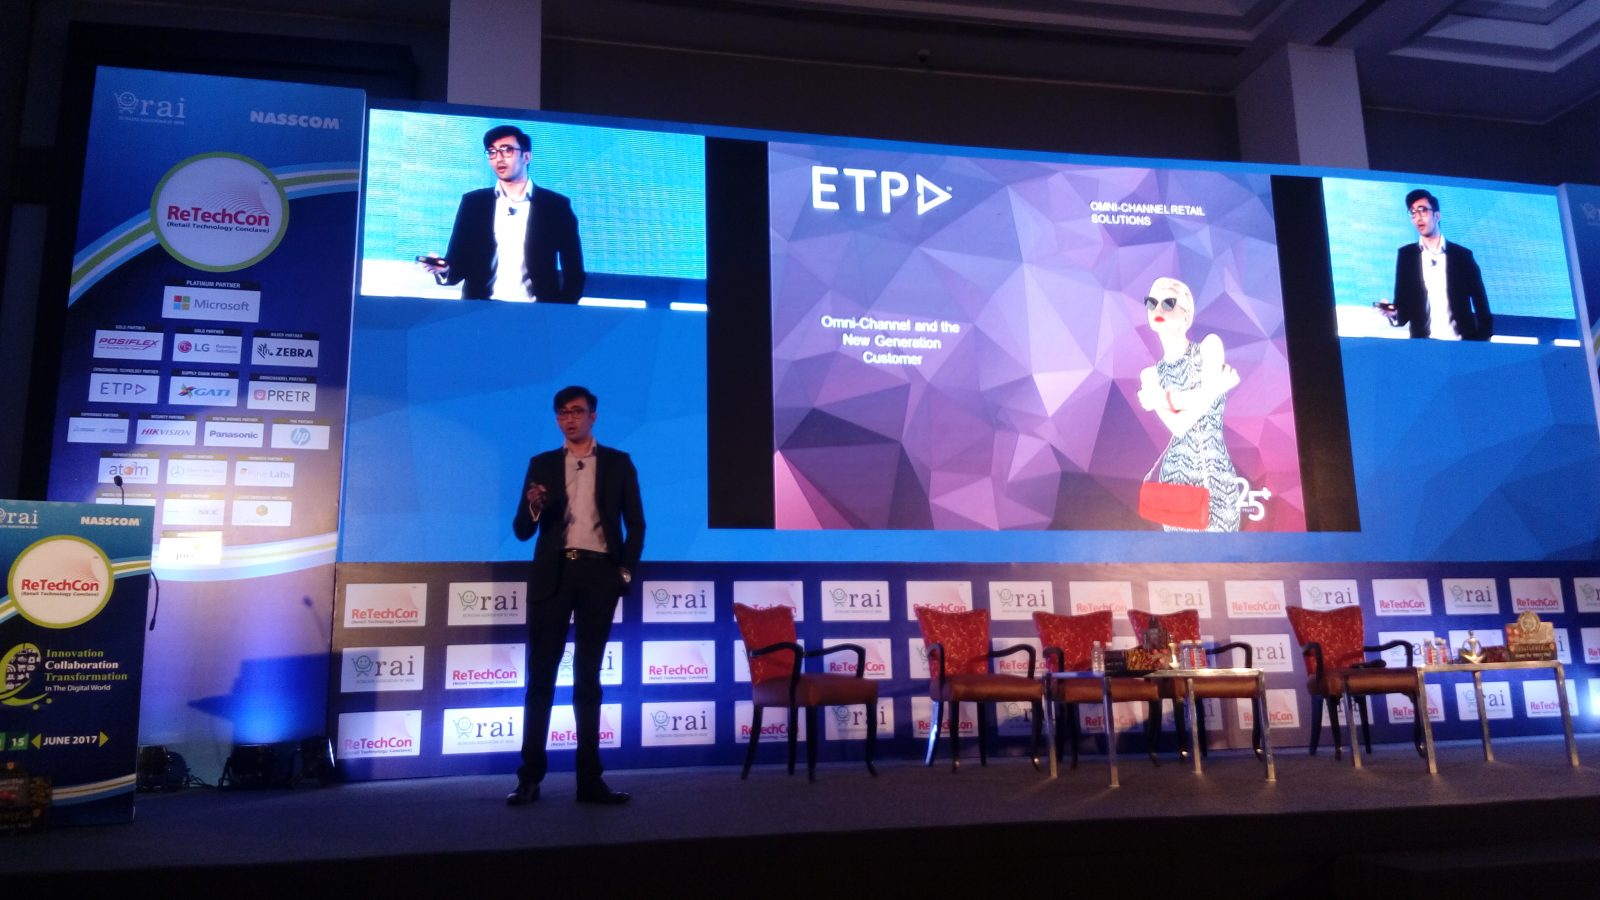 ETP tại ReTechCon 2017